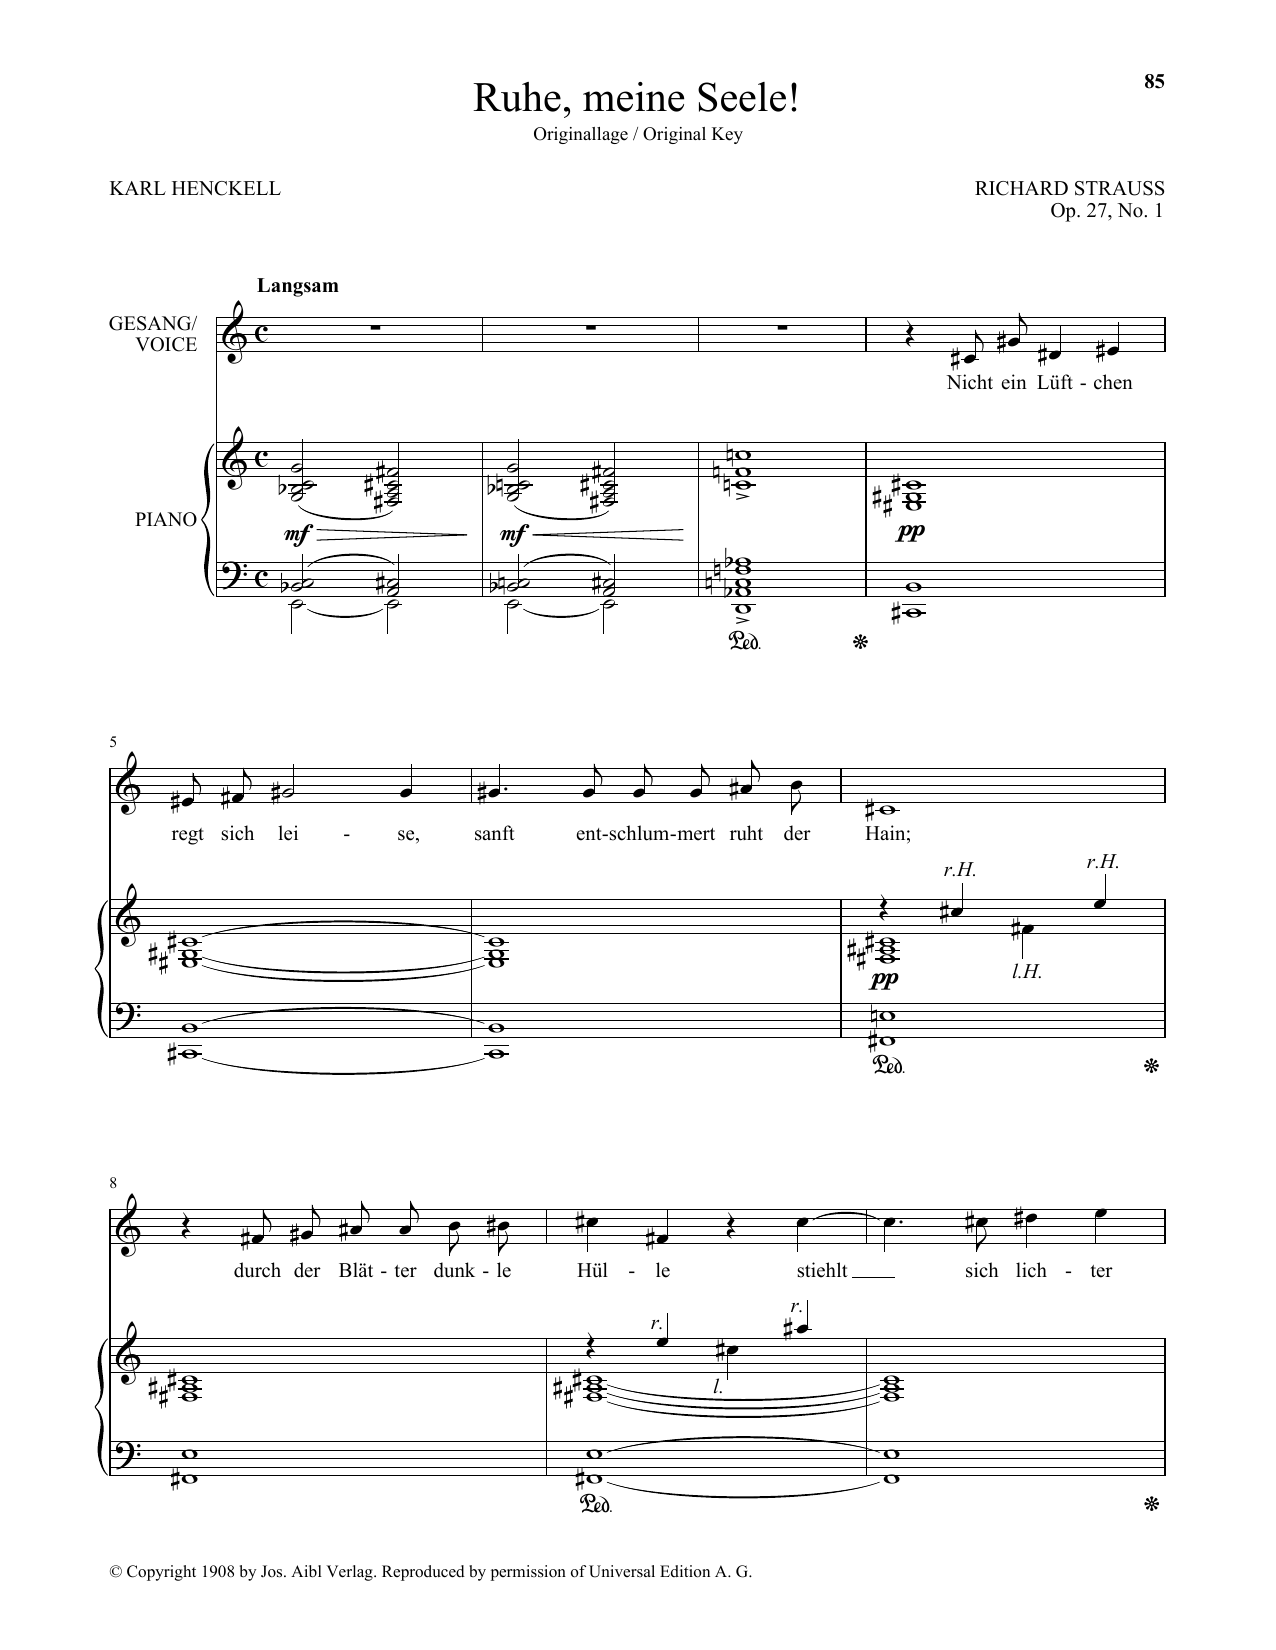 Download Richard Strauss Ruhe, Meine Seele! (High Voice) Sheet Music